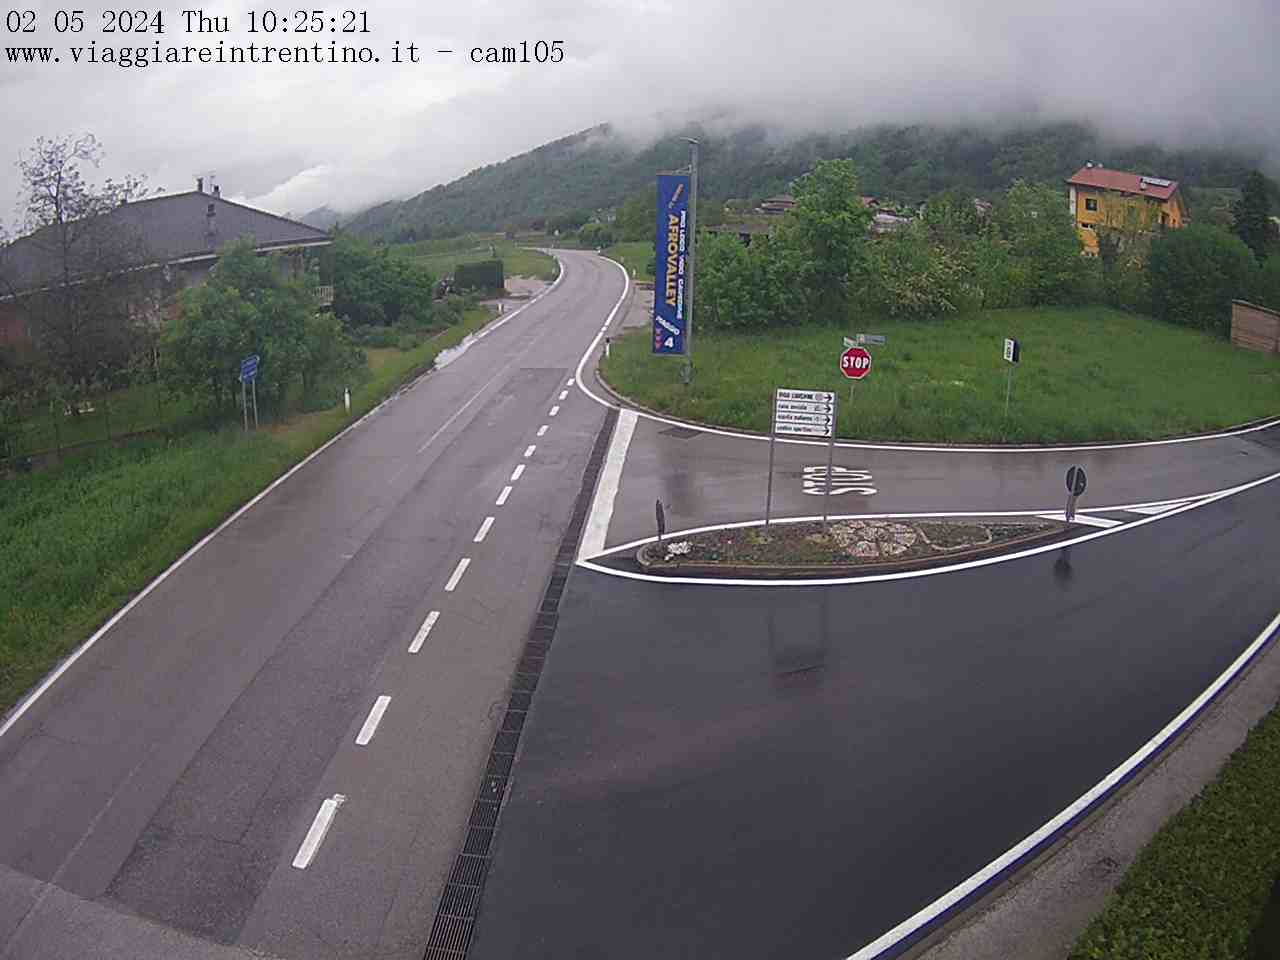 webcam Vigo,  webcam comune di Cavedine, webcam provincia di Trento, 
                                            webcam Trentino-Alto Adige, webcam alpi